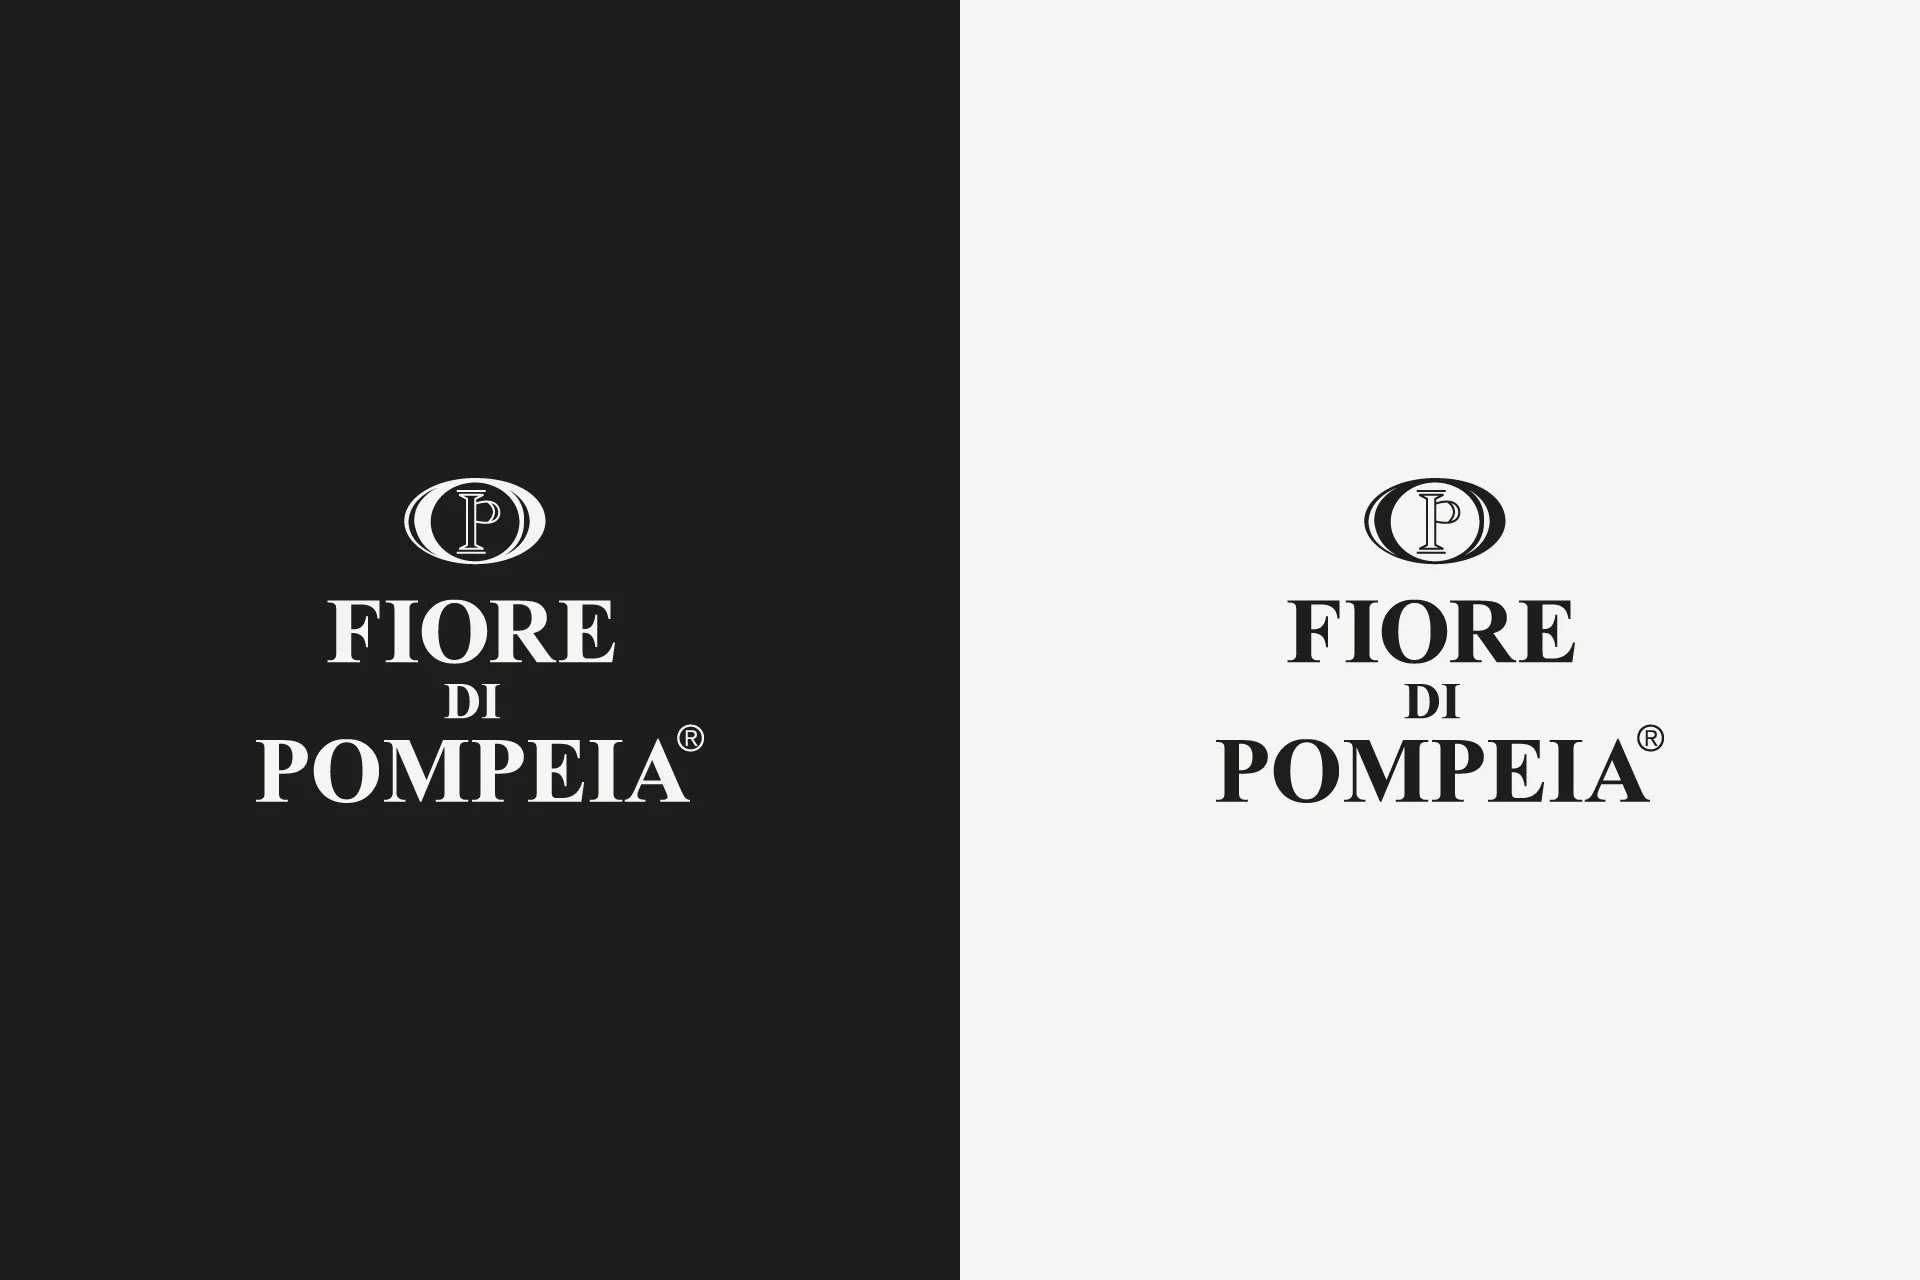 Fiore di Pompeia | diseño de identidad